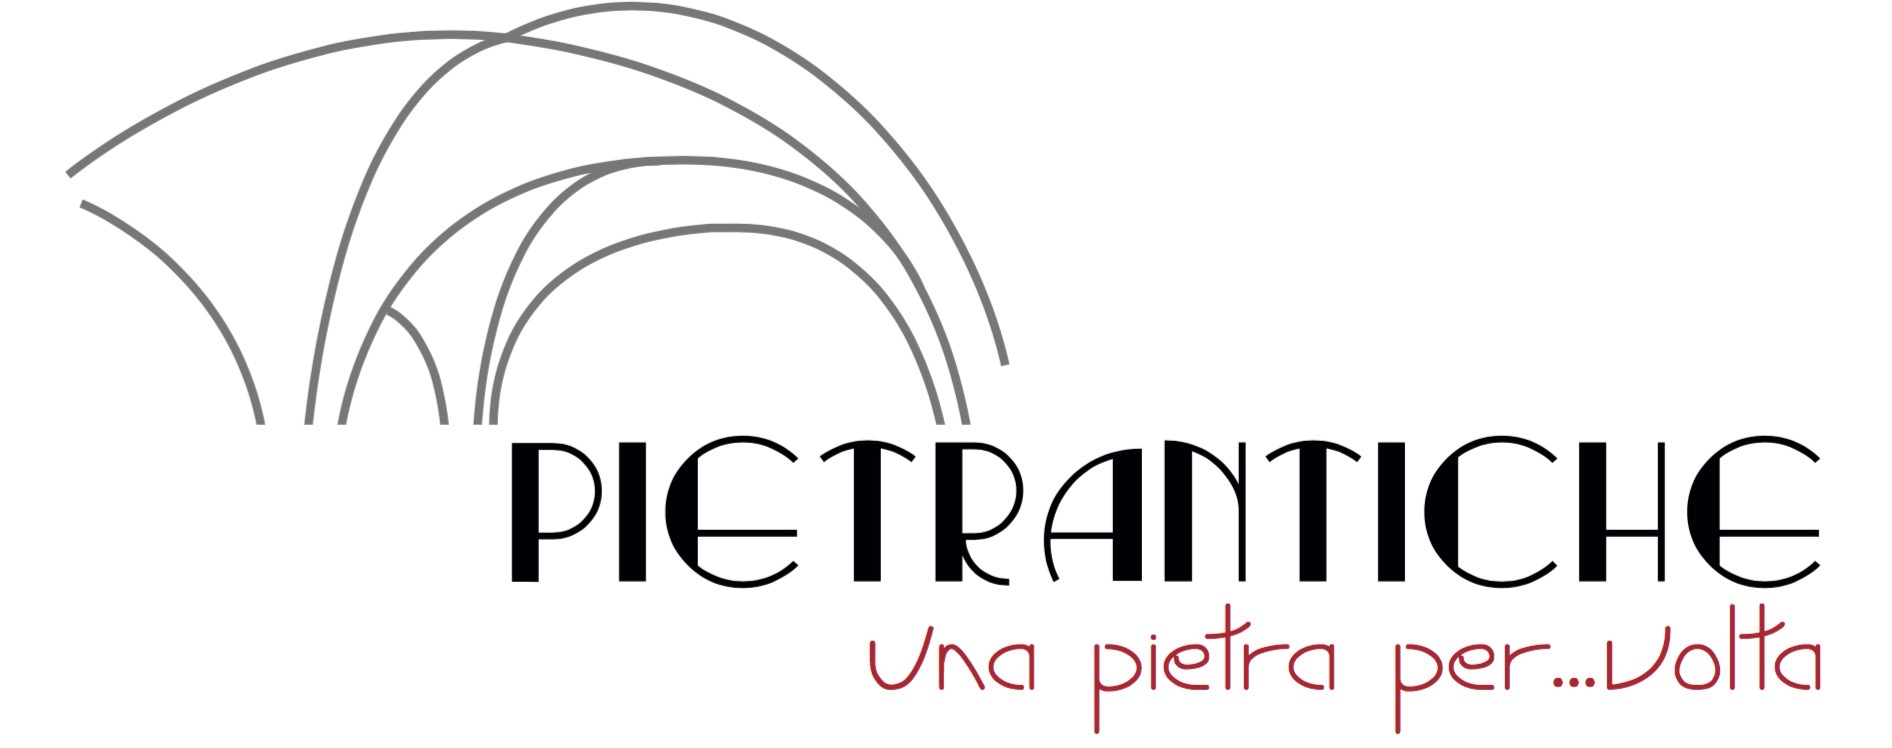 pietrantiche-logo-new